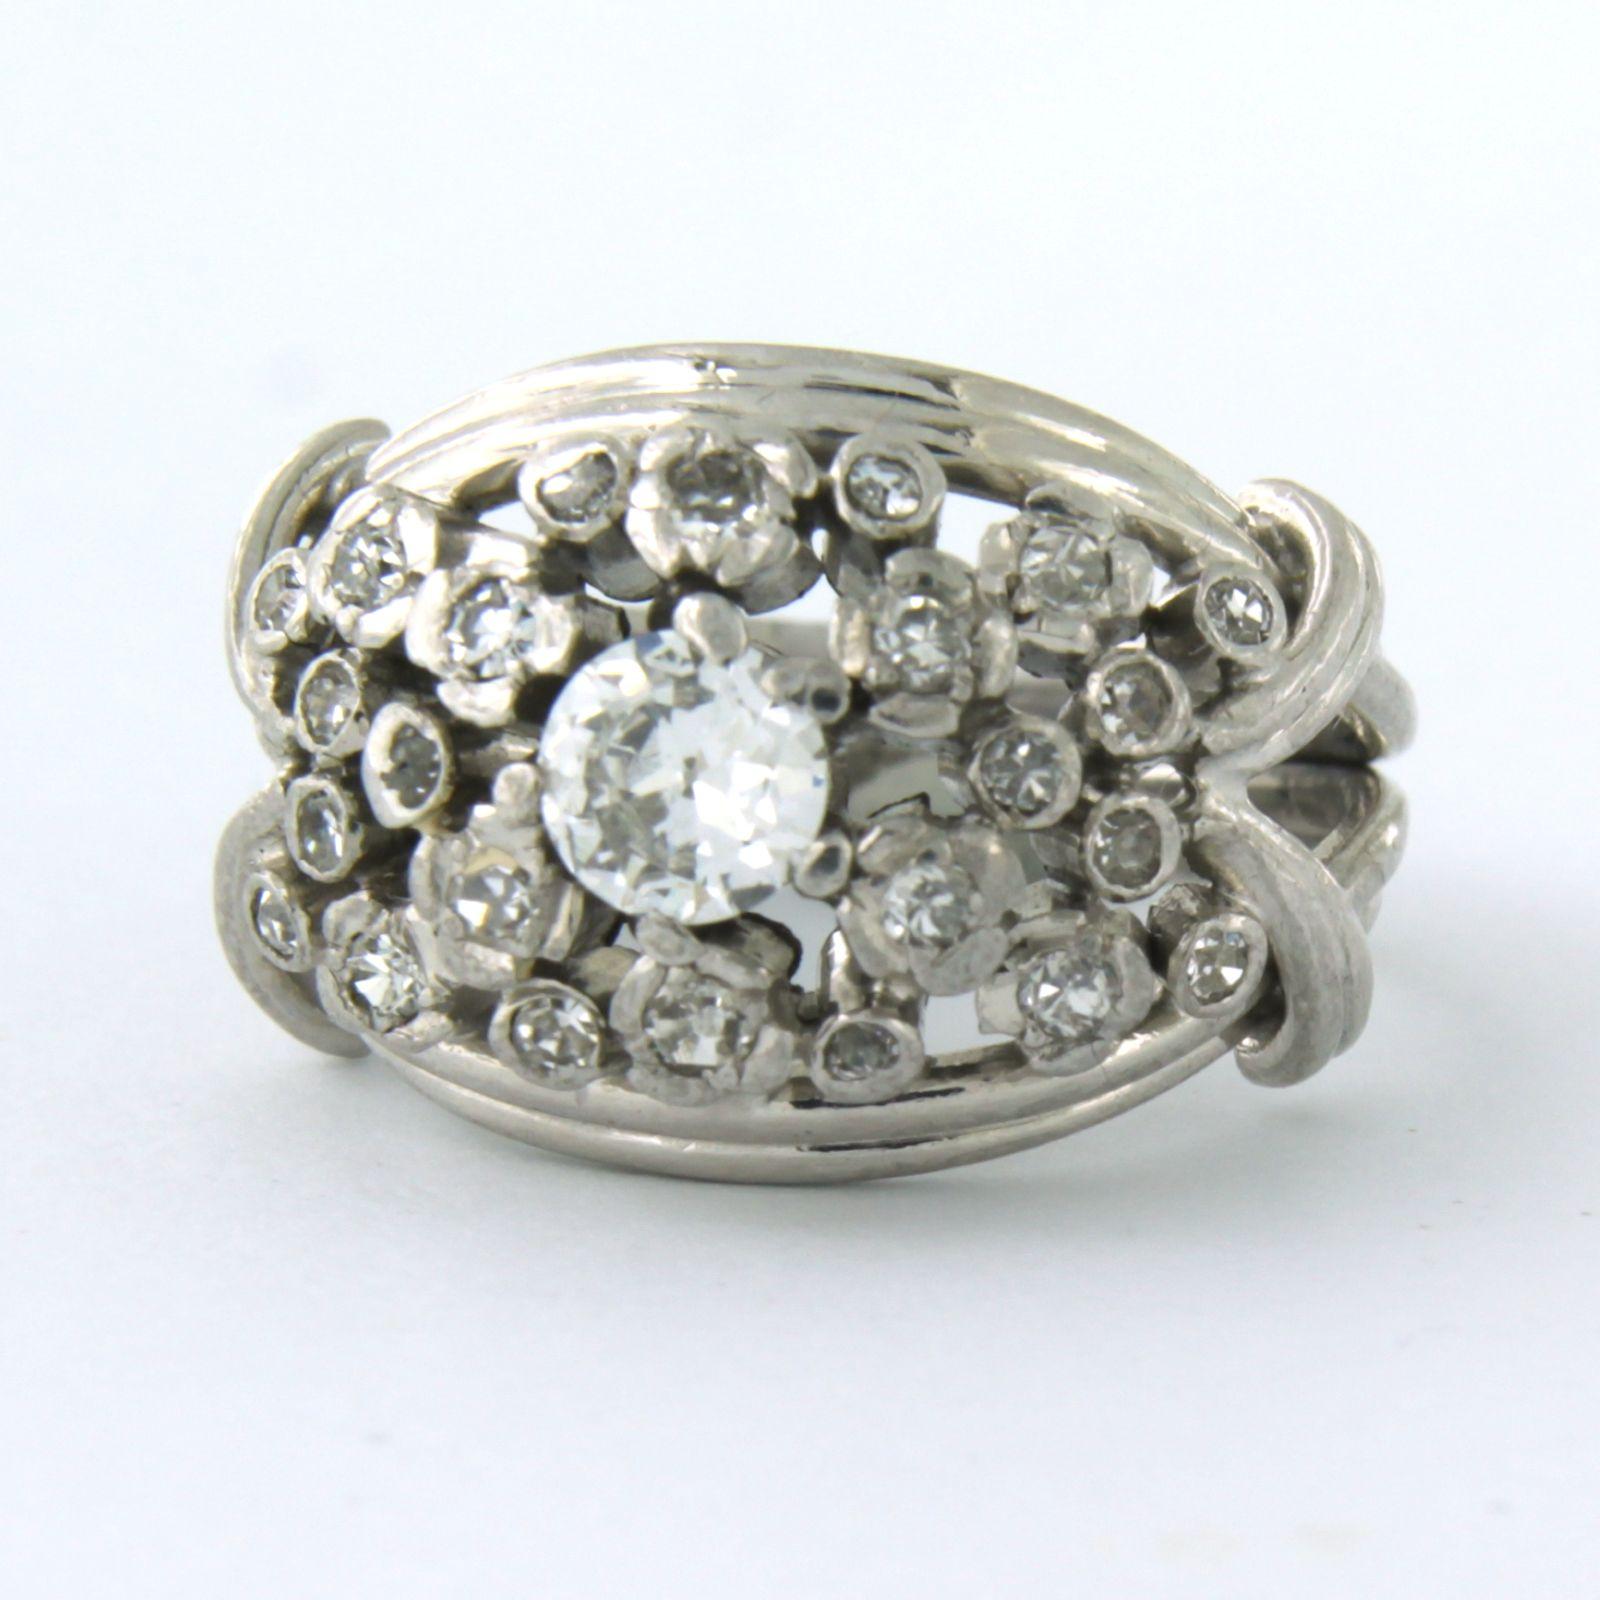 Platinring, besetzt mit alten europäischen Diamanten und Diamanten im Einzelschliff. 0.64ct - G - VS - Ringgröße U.S. 6 - EU. 16.5(52)

detaillierte Beschreibung:

die Oberseite des Rings beträgt 1,4 cm und ist 7,0 mm hoch

Gewicht 12,9 Gramm

Ring